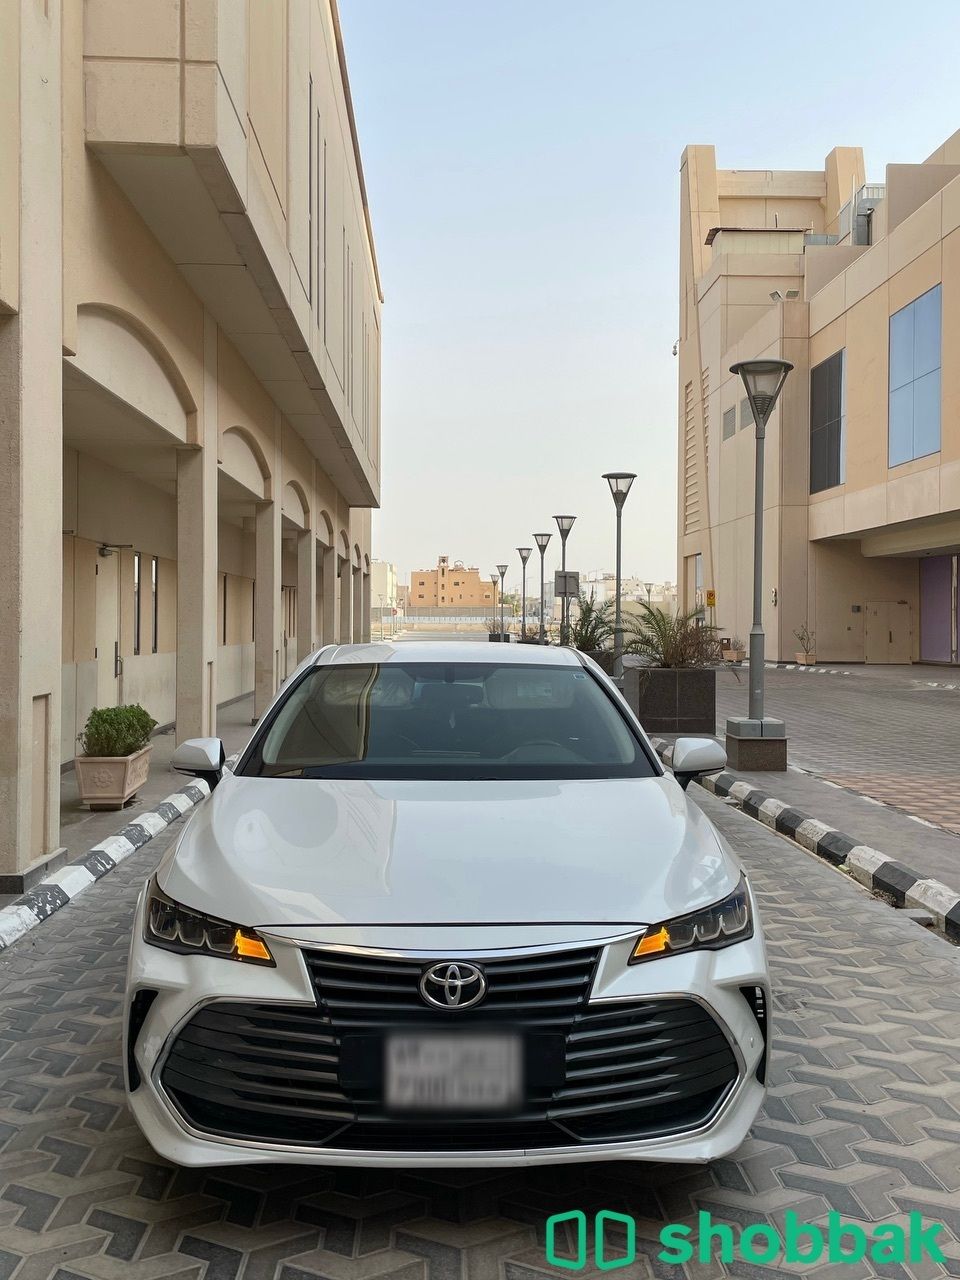 تويوتا افالون 2019 XLE مطور نظيفه للمستخدم  شباك السعودية